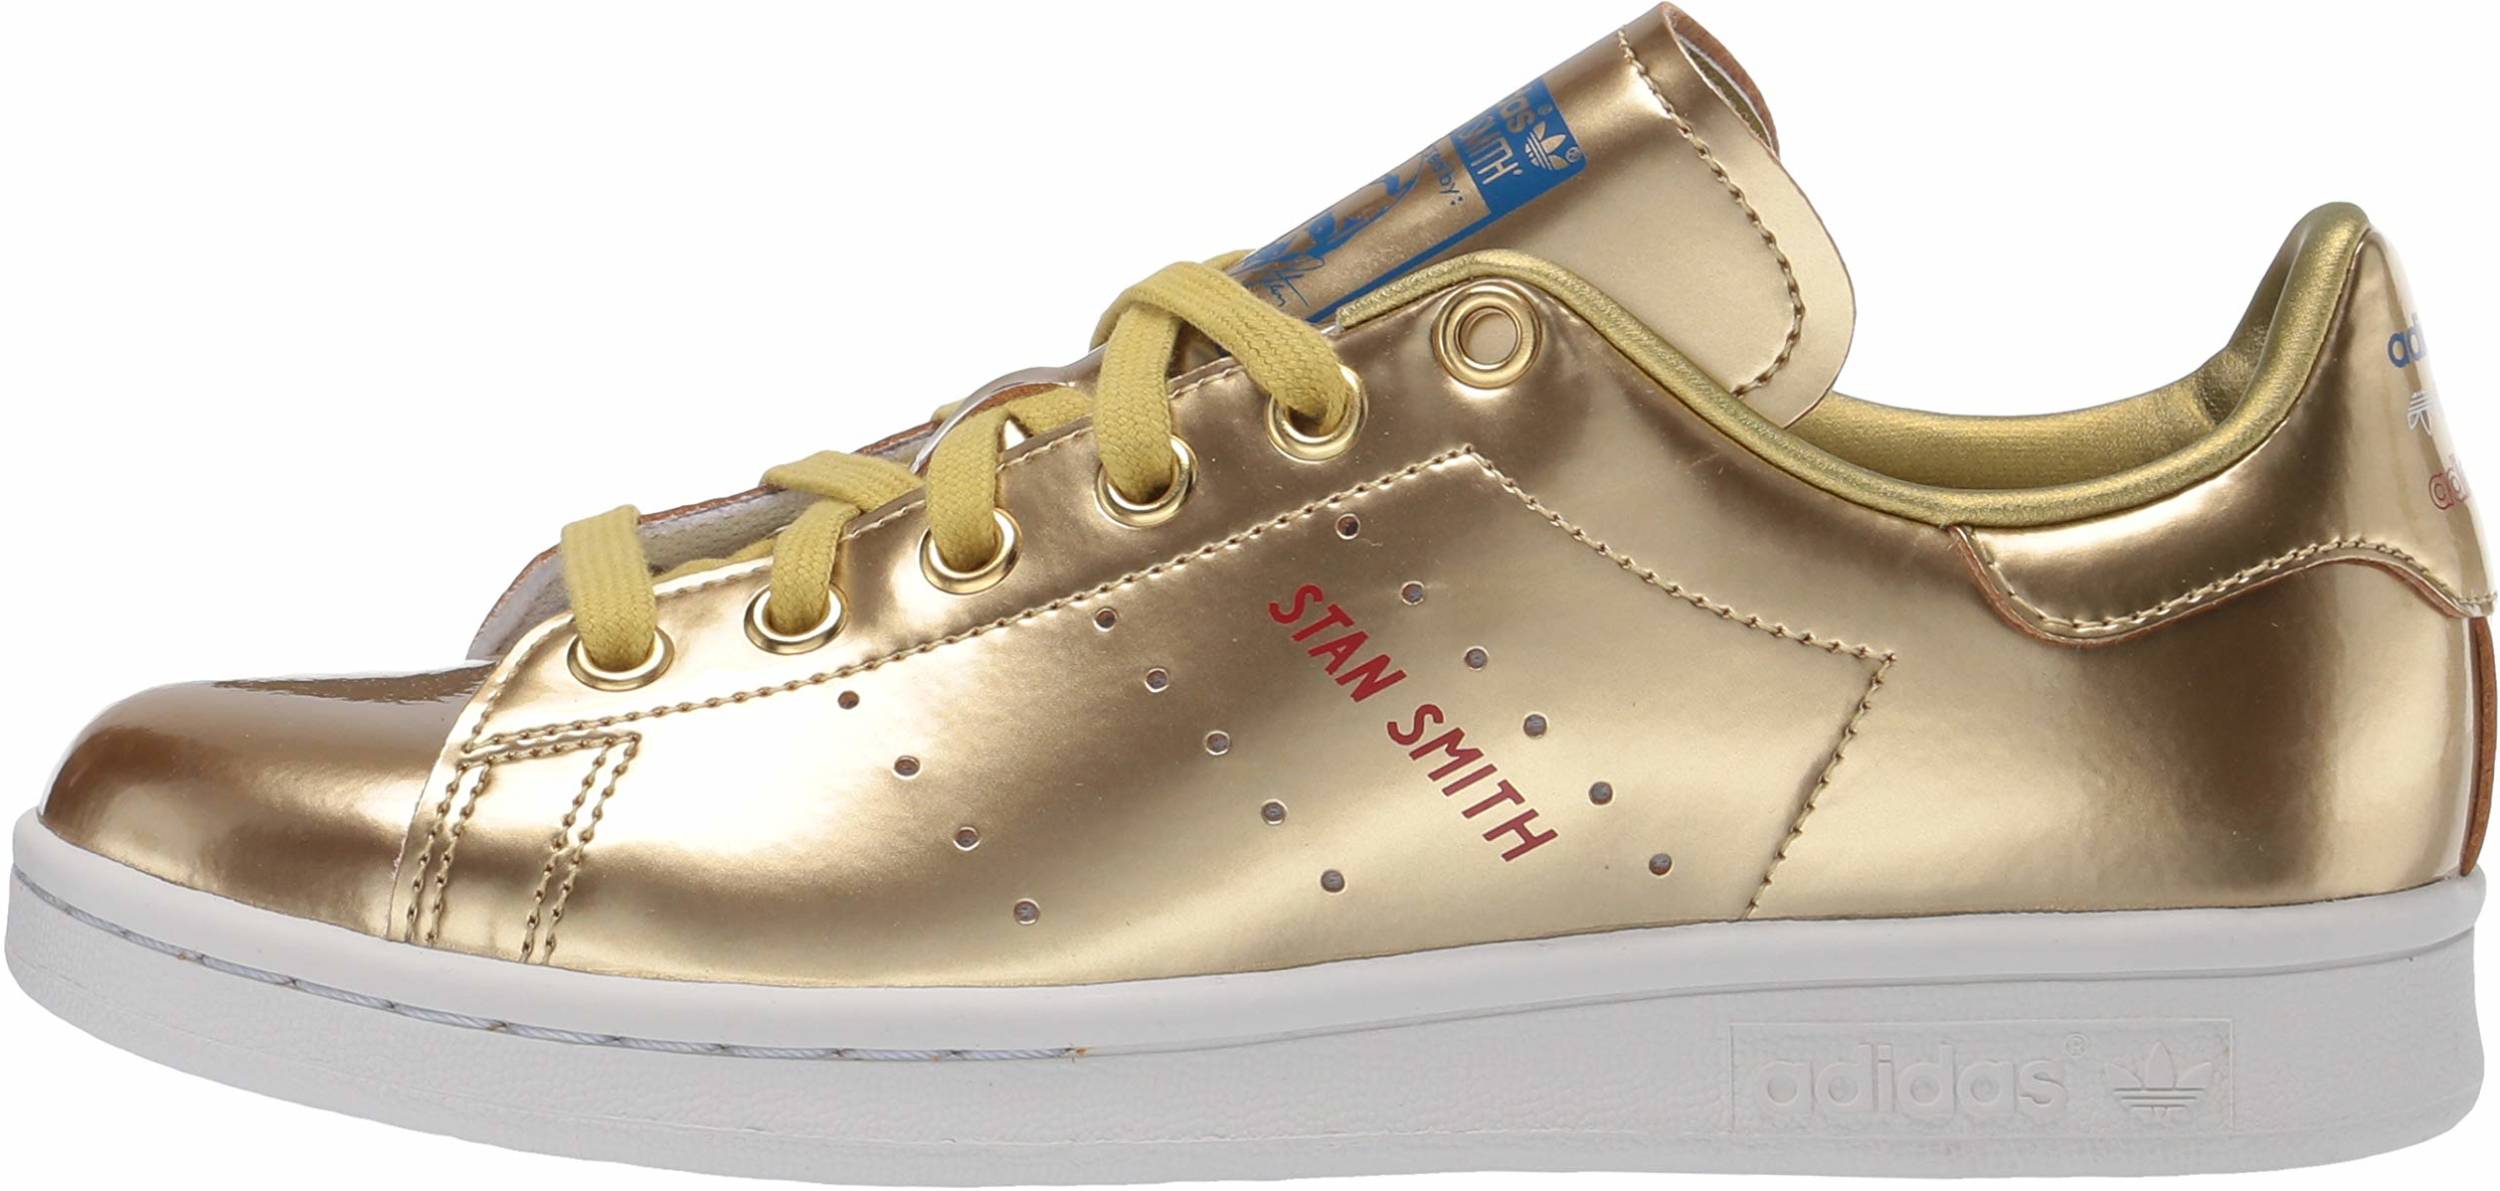 Gold Sneakers Women : Ø¹ØµØ§ Ø¬Ù‡Ø§Øª Ù…Ø§Ù†Ø­Ø© Ù…Ø¹ÙŠØ§Ø± Nike Gold